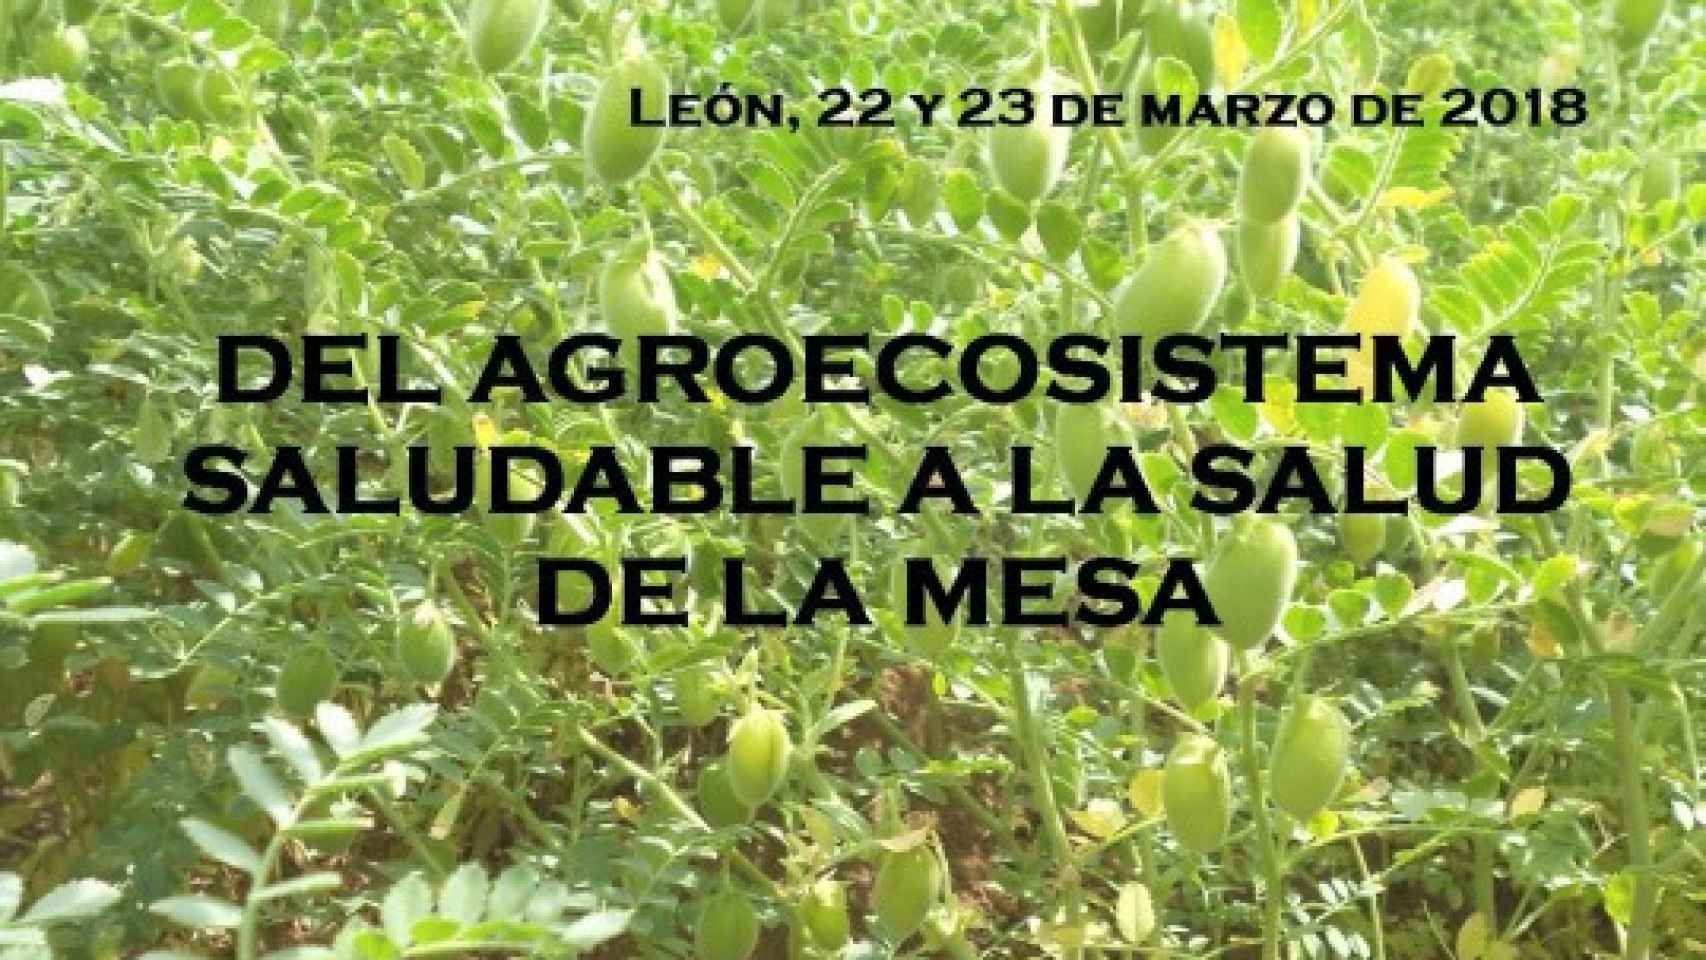 IV Jornadas de Agricultura Ecologica